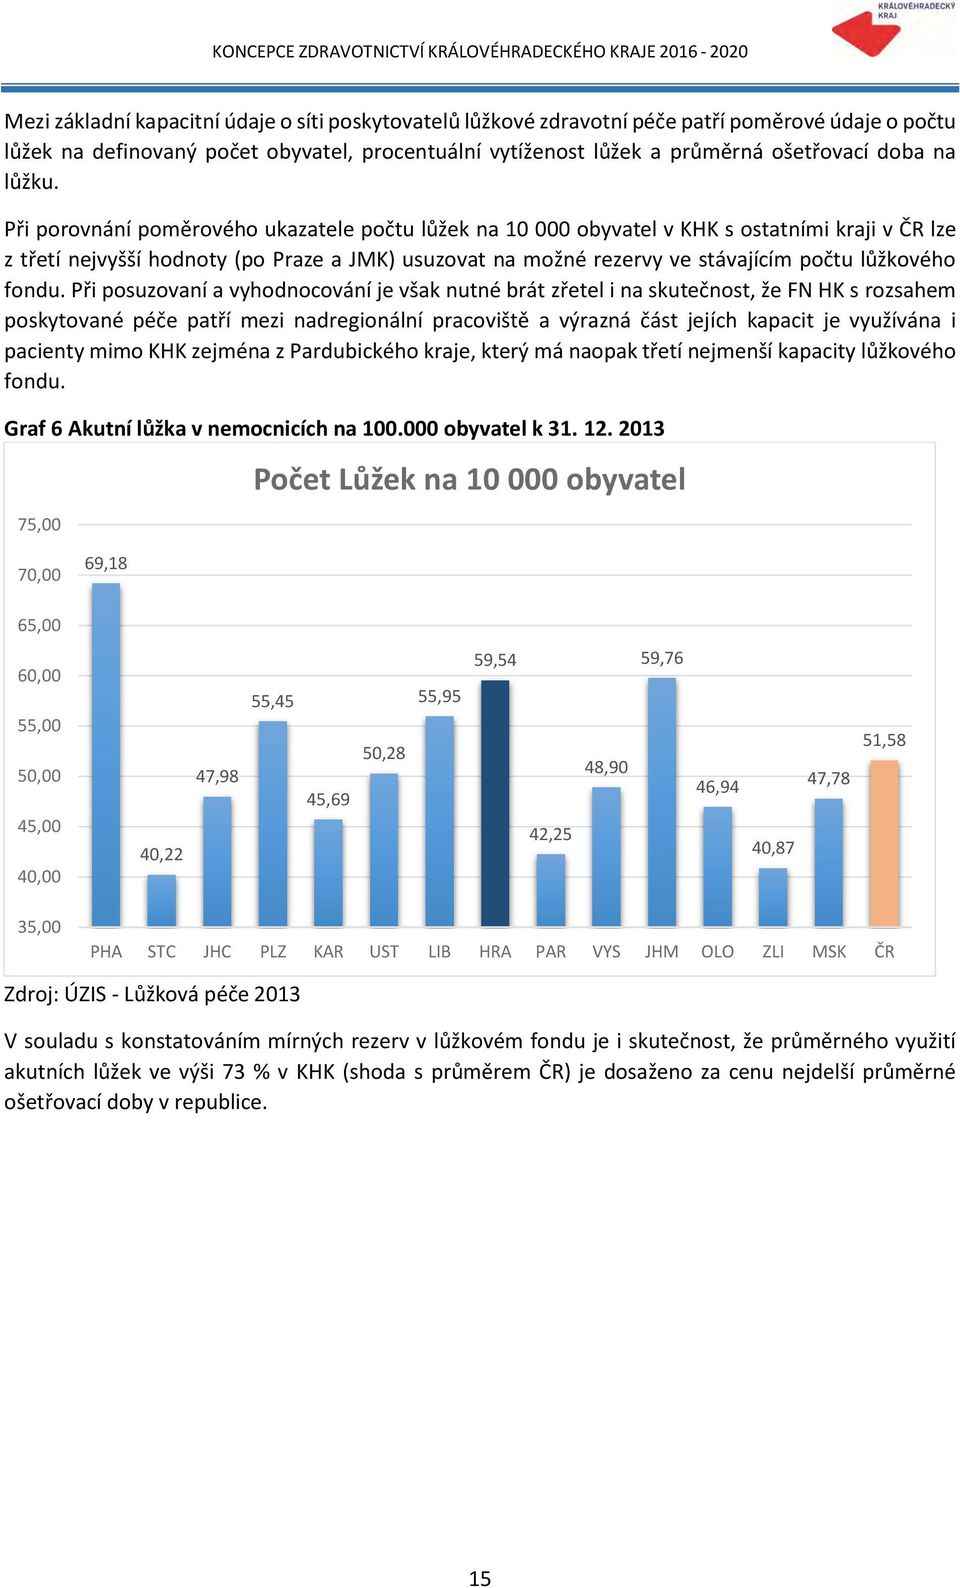 Při porovnání poměrového ukazatele počtu lůžek na 10 000 obyvatel v KHK s ostatními kraji v ČR lze z třetí nejvyšší hodnoty (po Praze a JMK) usuzovat na možné rezervy ve stávajícím počtu lůžkového